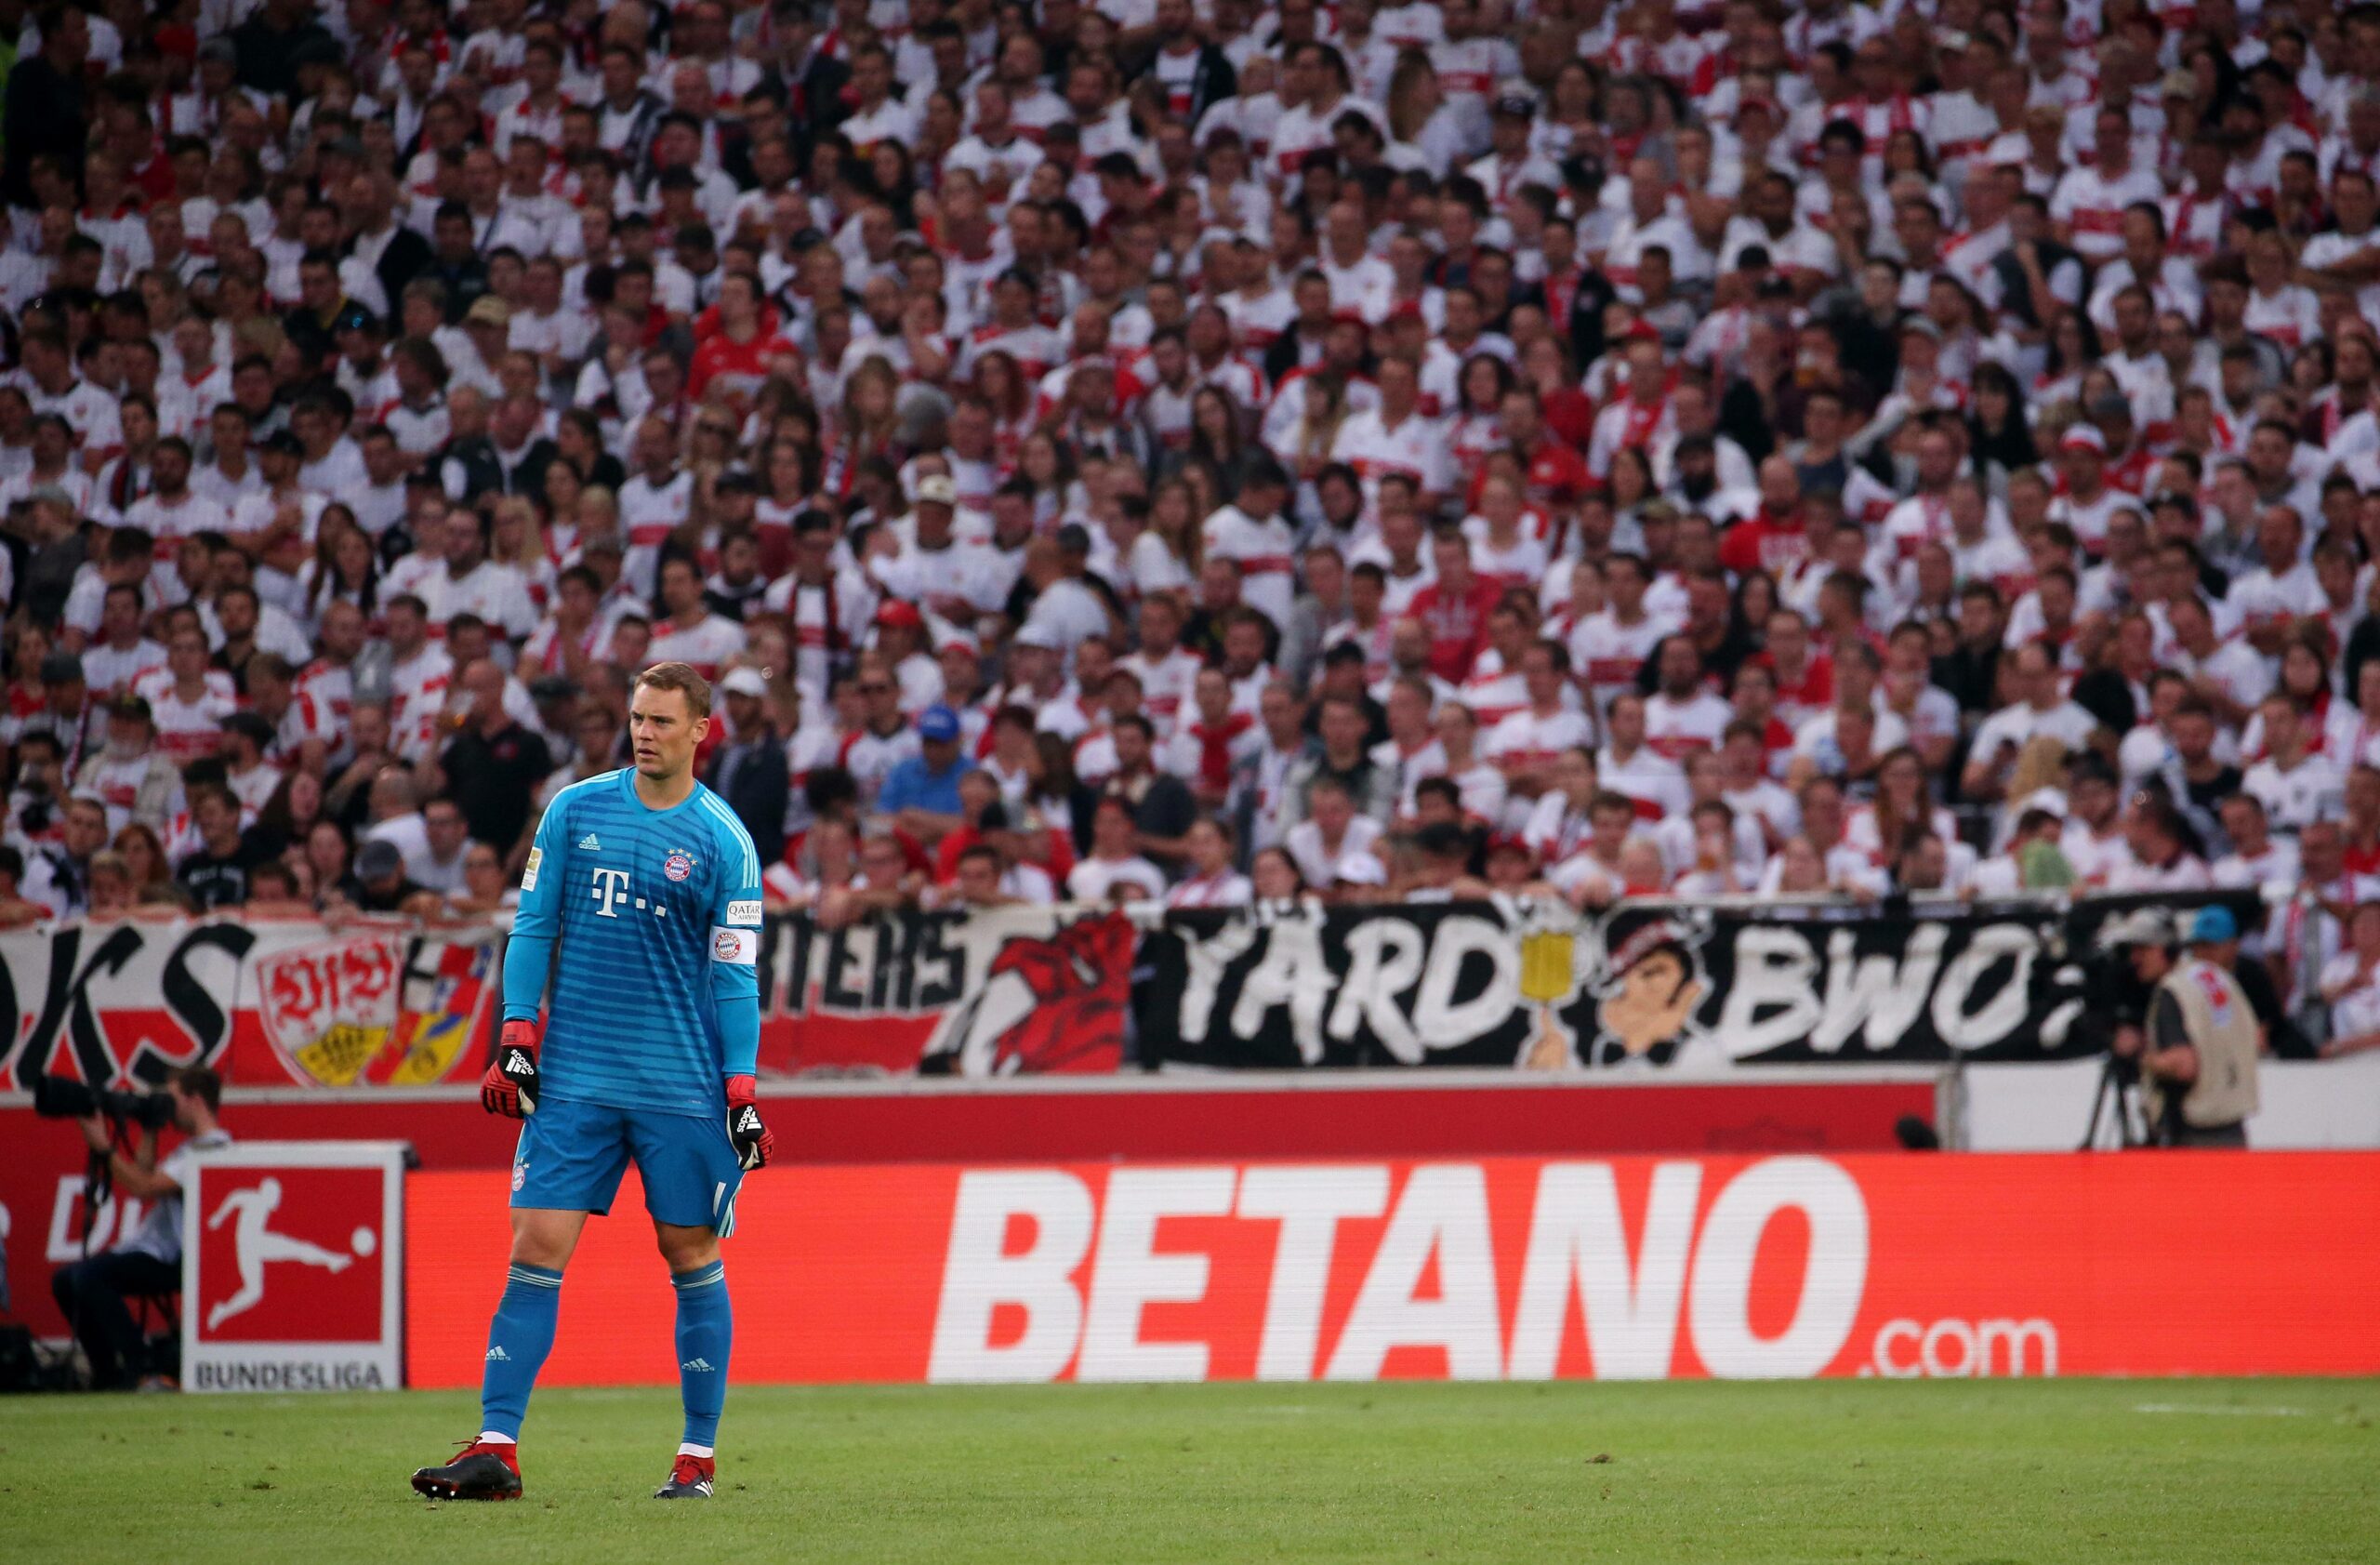 Manuel Neuer vor einer Betano-Werbebande